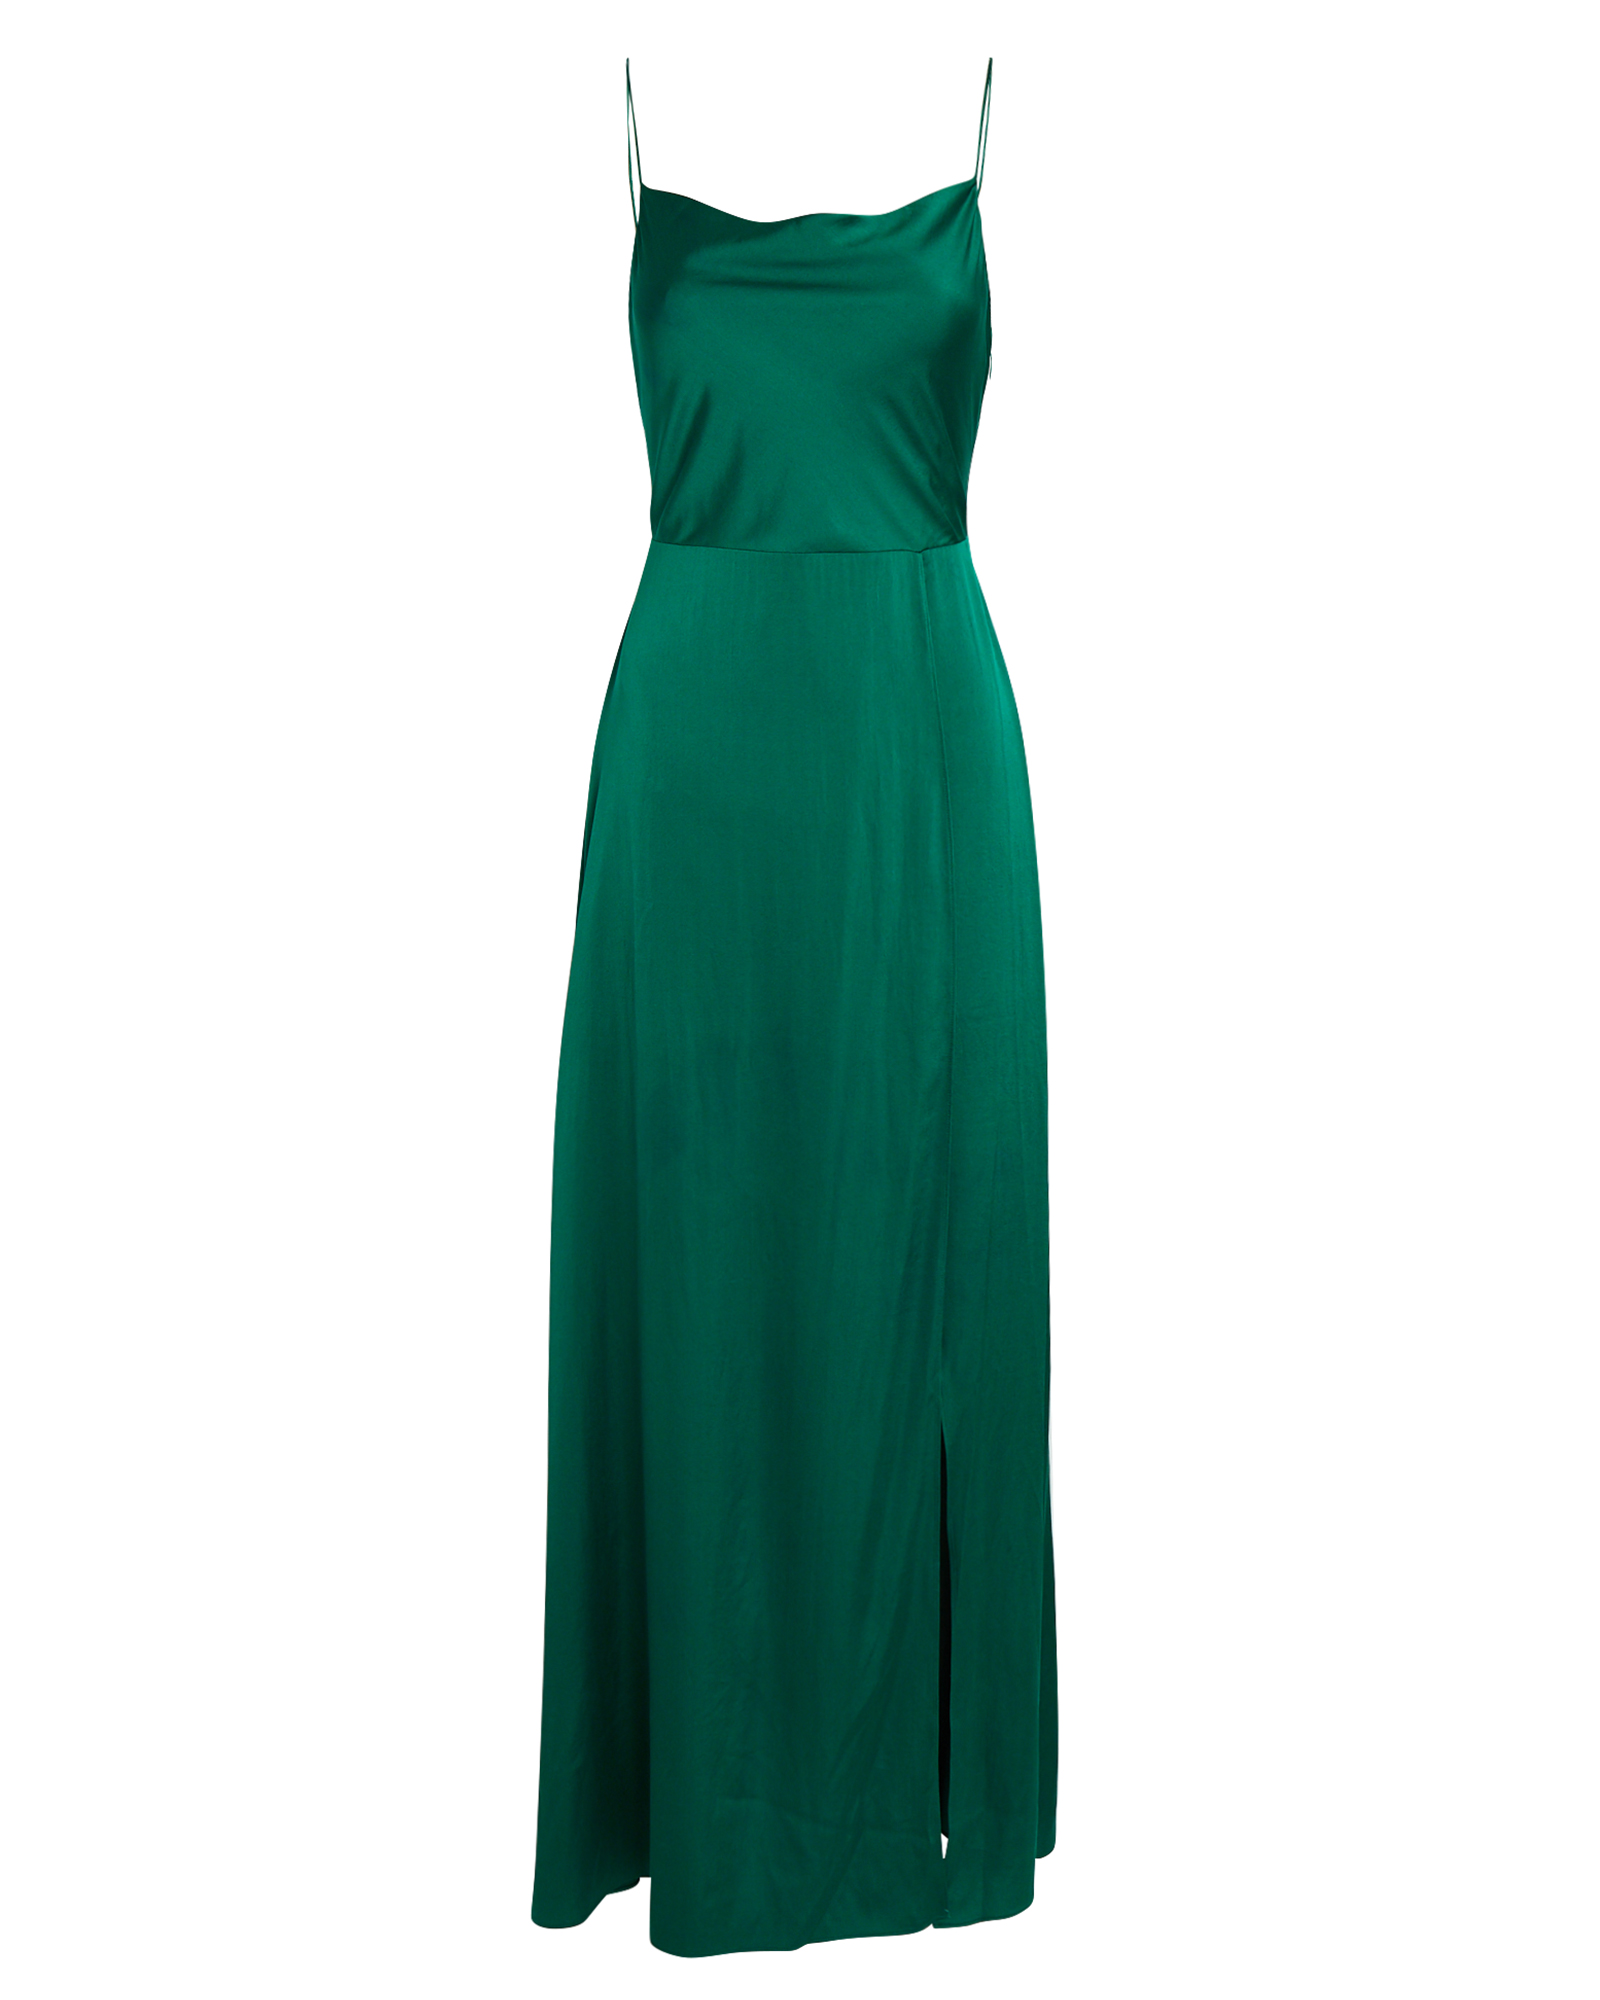 intermix green dress